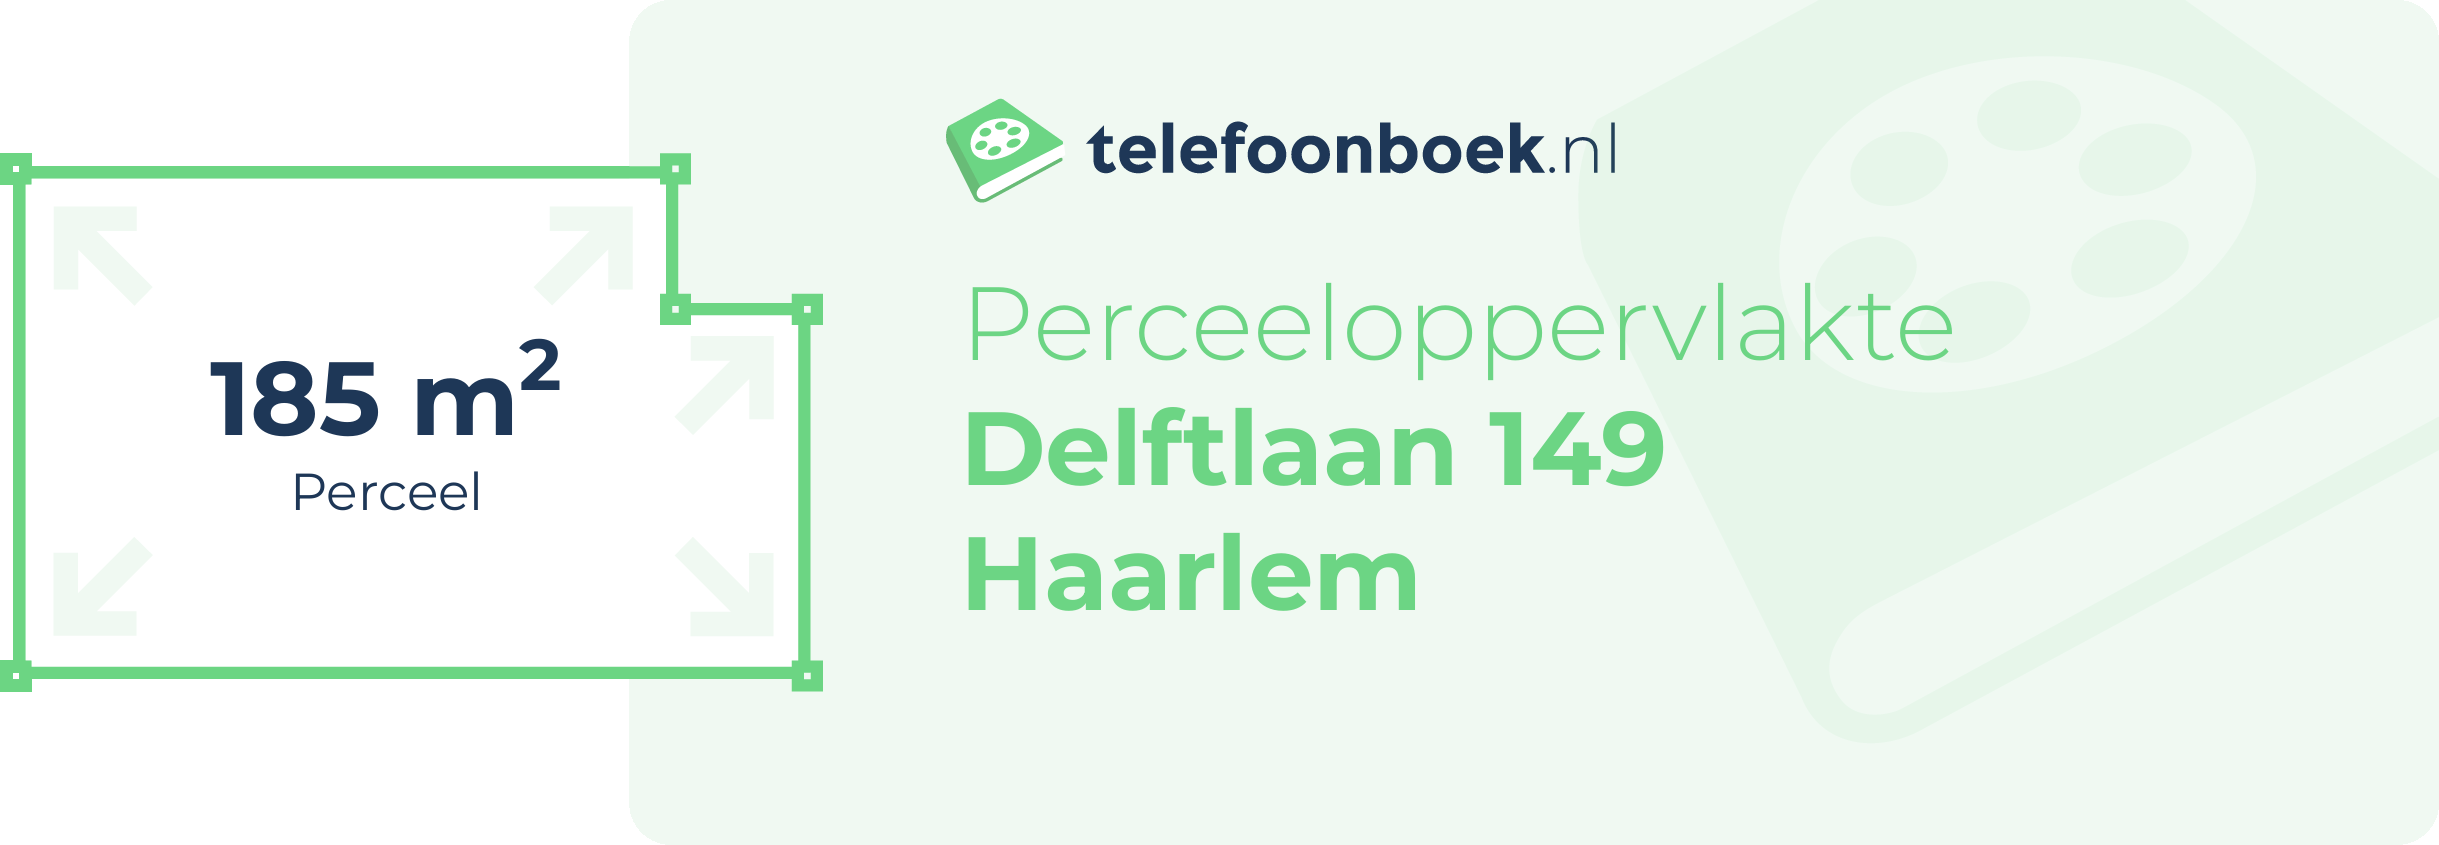 Perceeloppervlakte Delftlaan 149 Haarlem